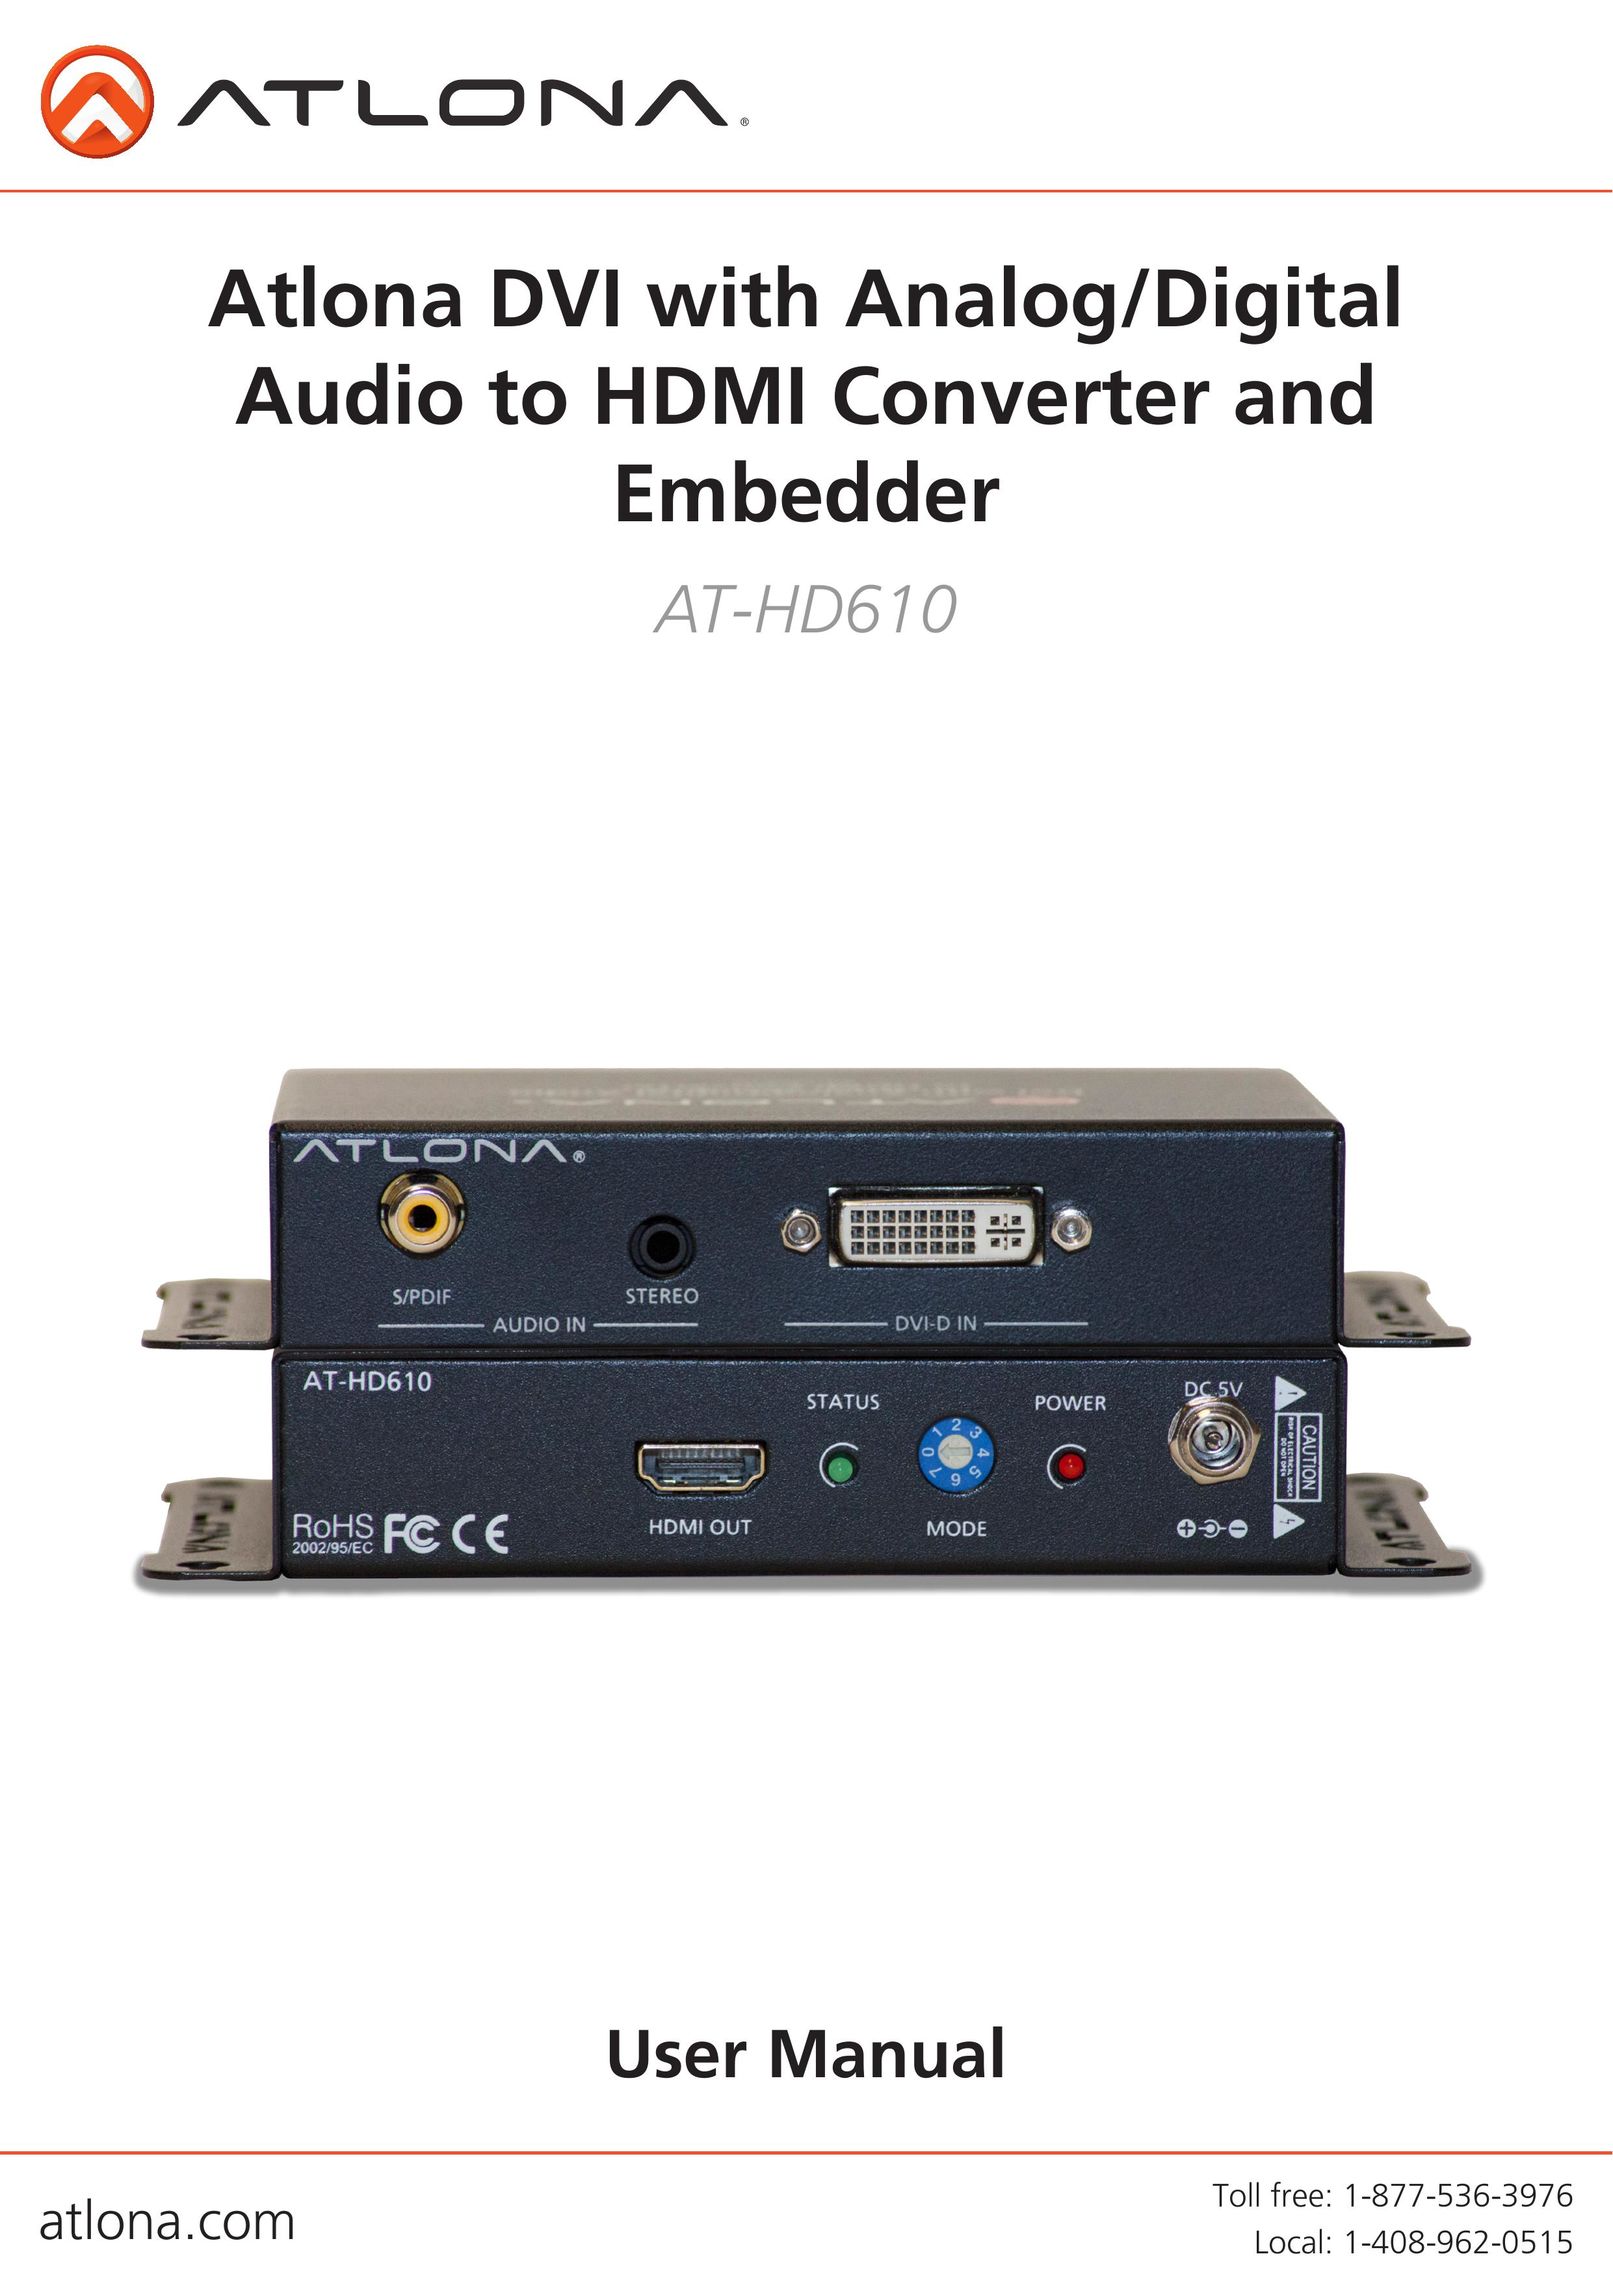 Atlona AT-HD610 TV Converter Box User Manual